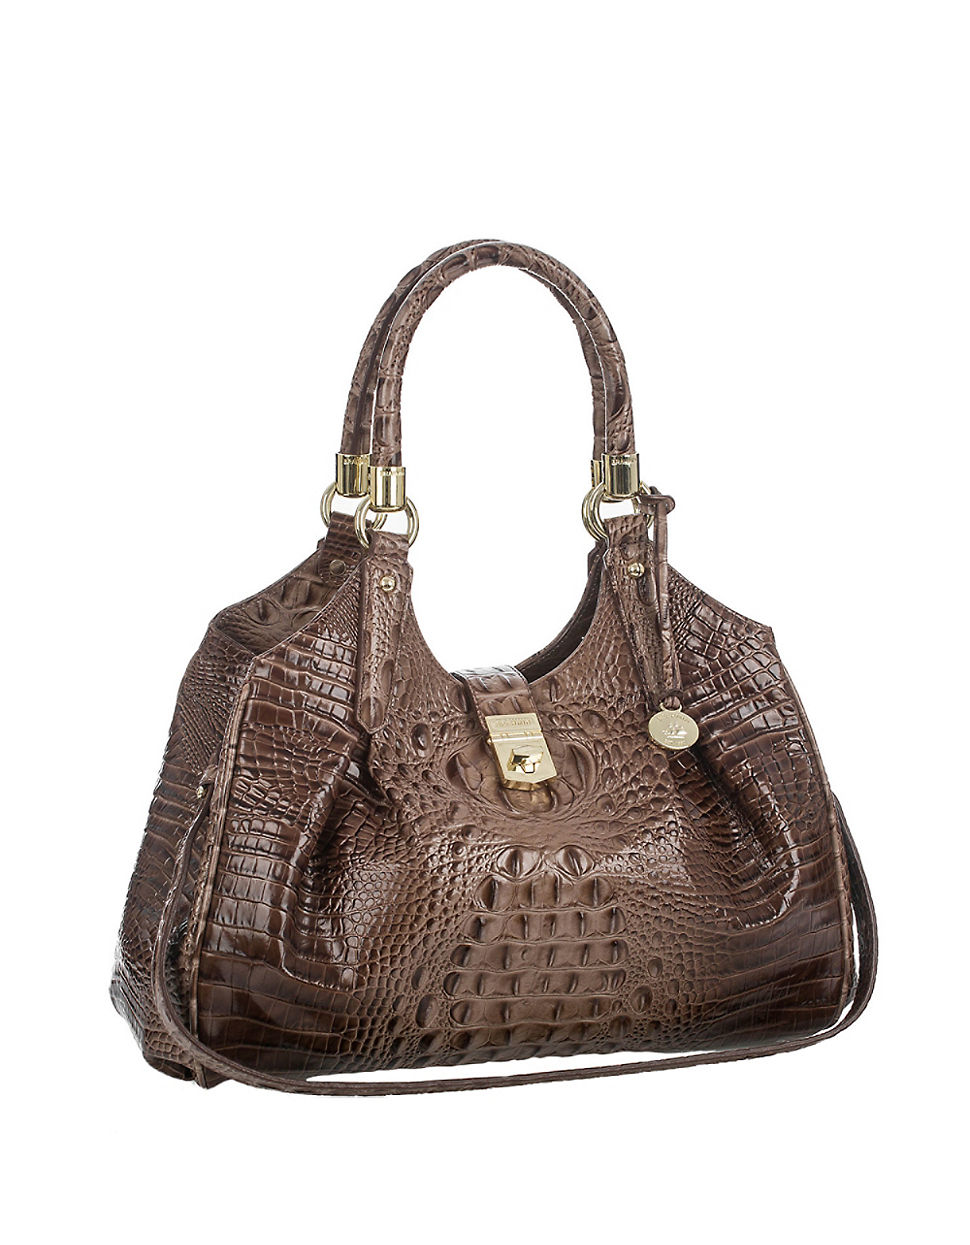 Lyst - Brahmin Elisa Leather Satchel Bag in Brown